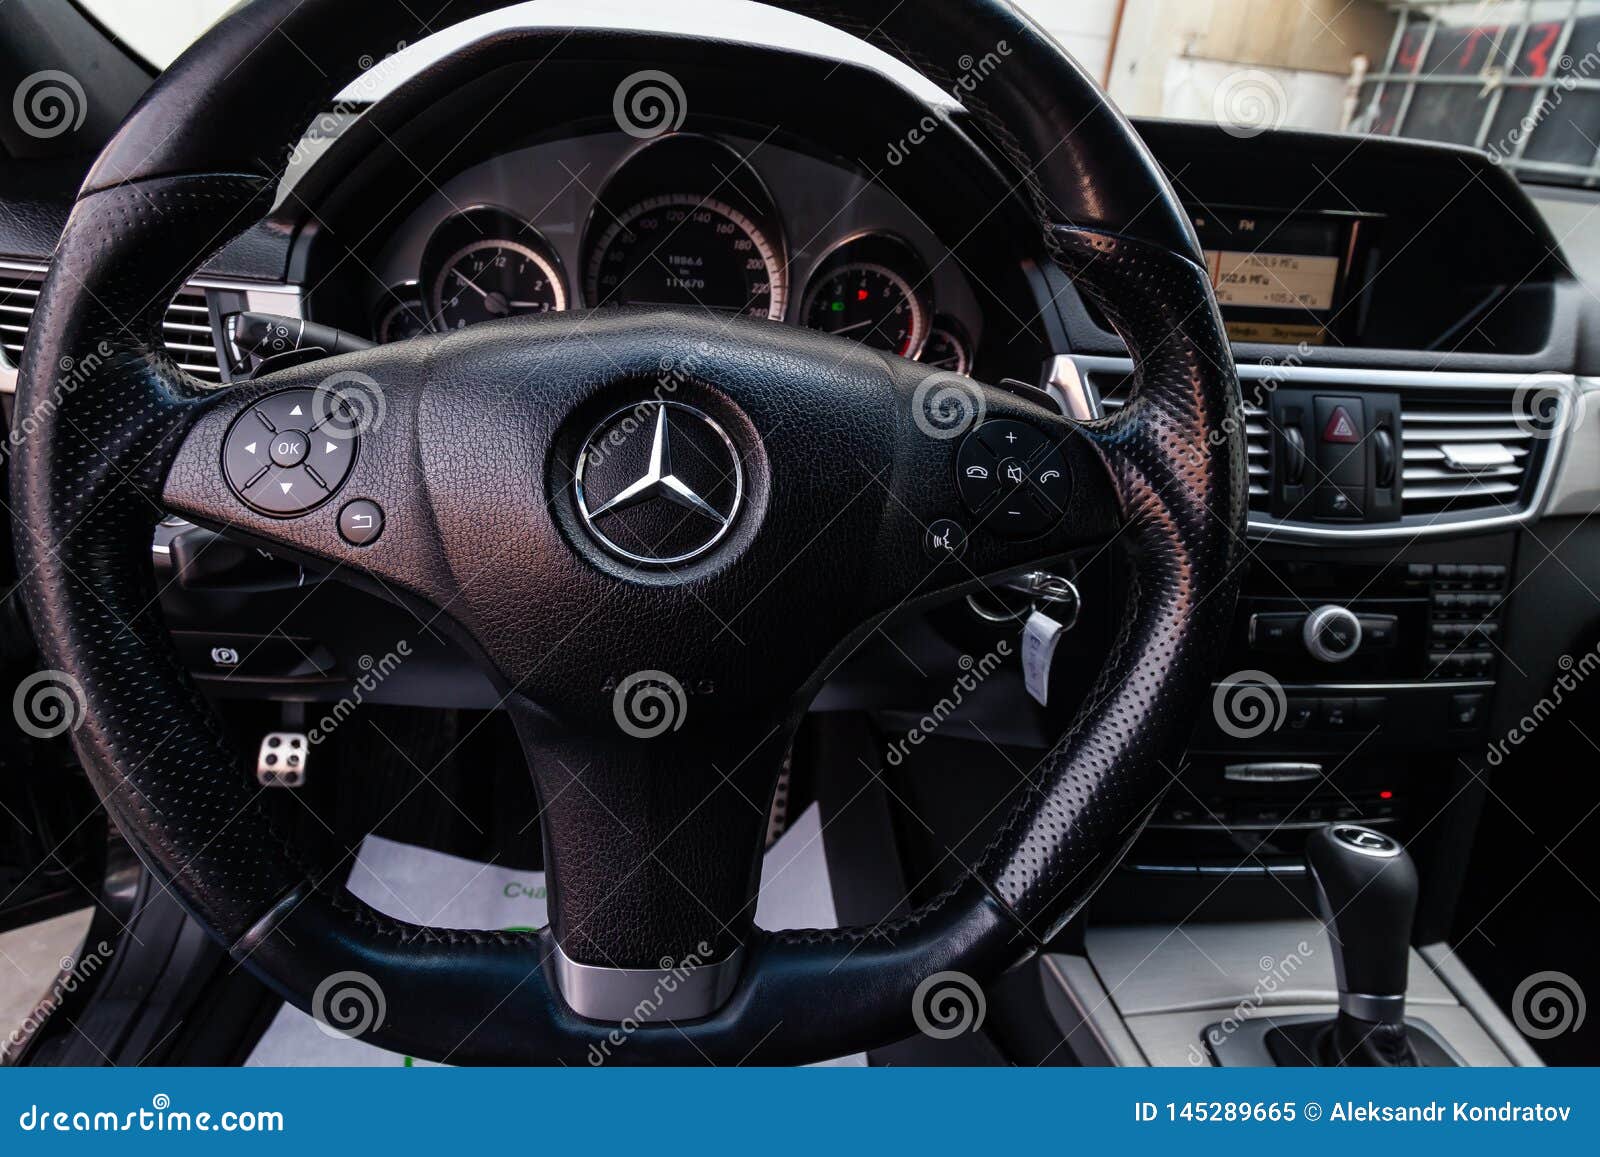 The Interior Of The Car Mercedes Benz E Class E250 With A